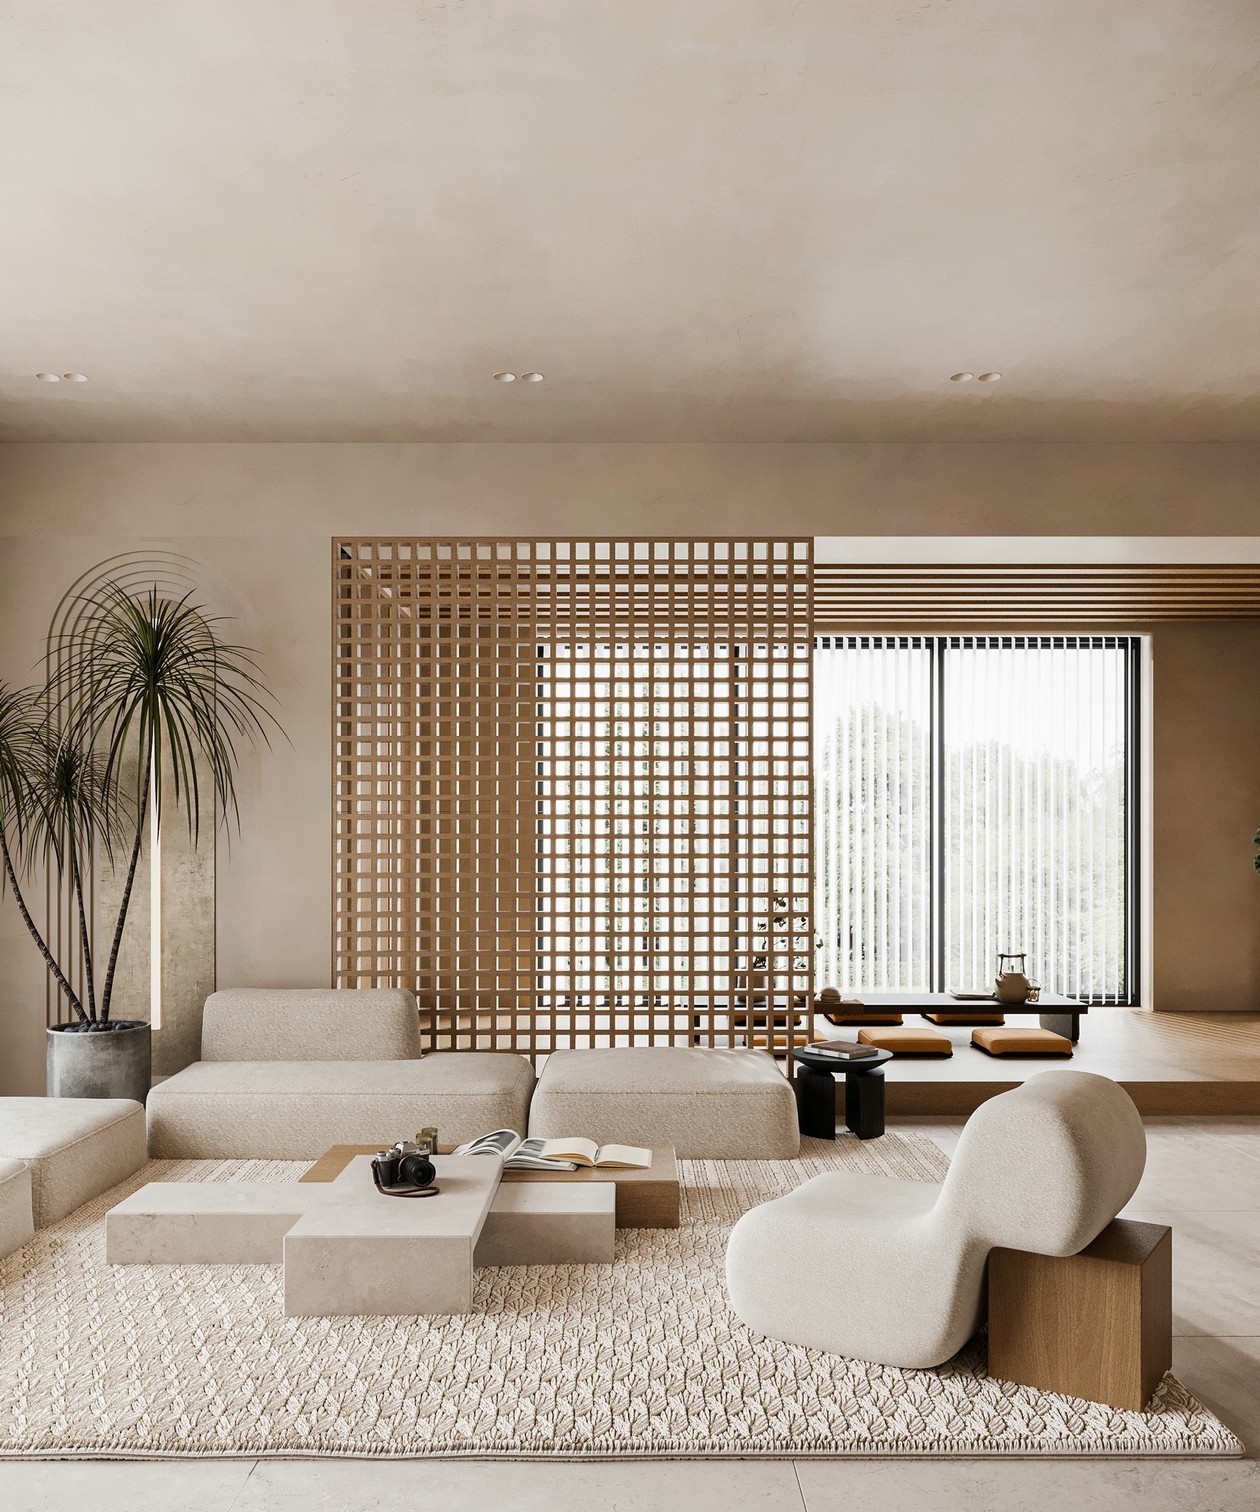 日式住宅设计 空间布局自由、灵活无碍